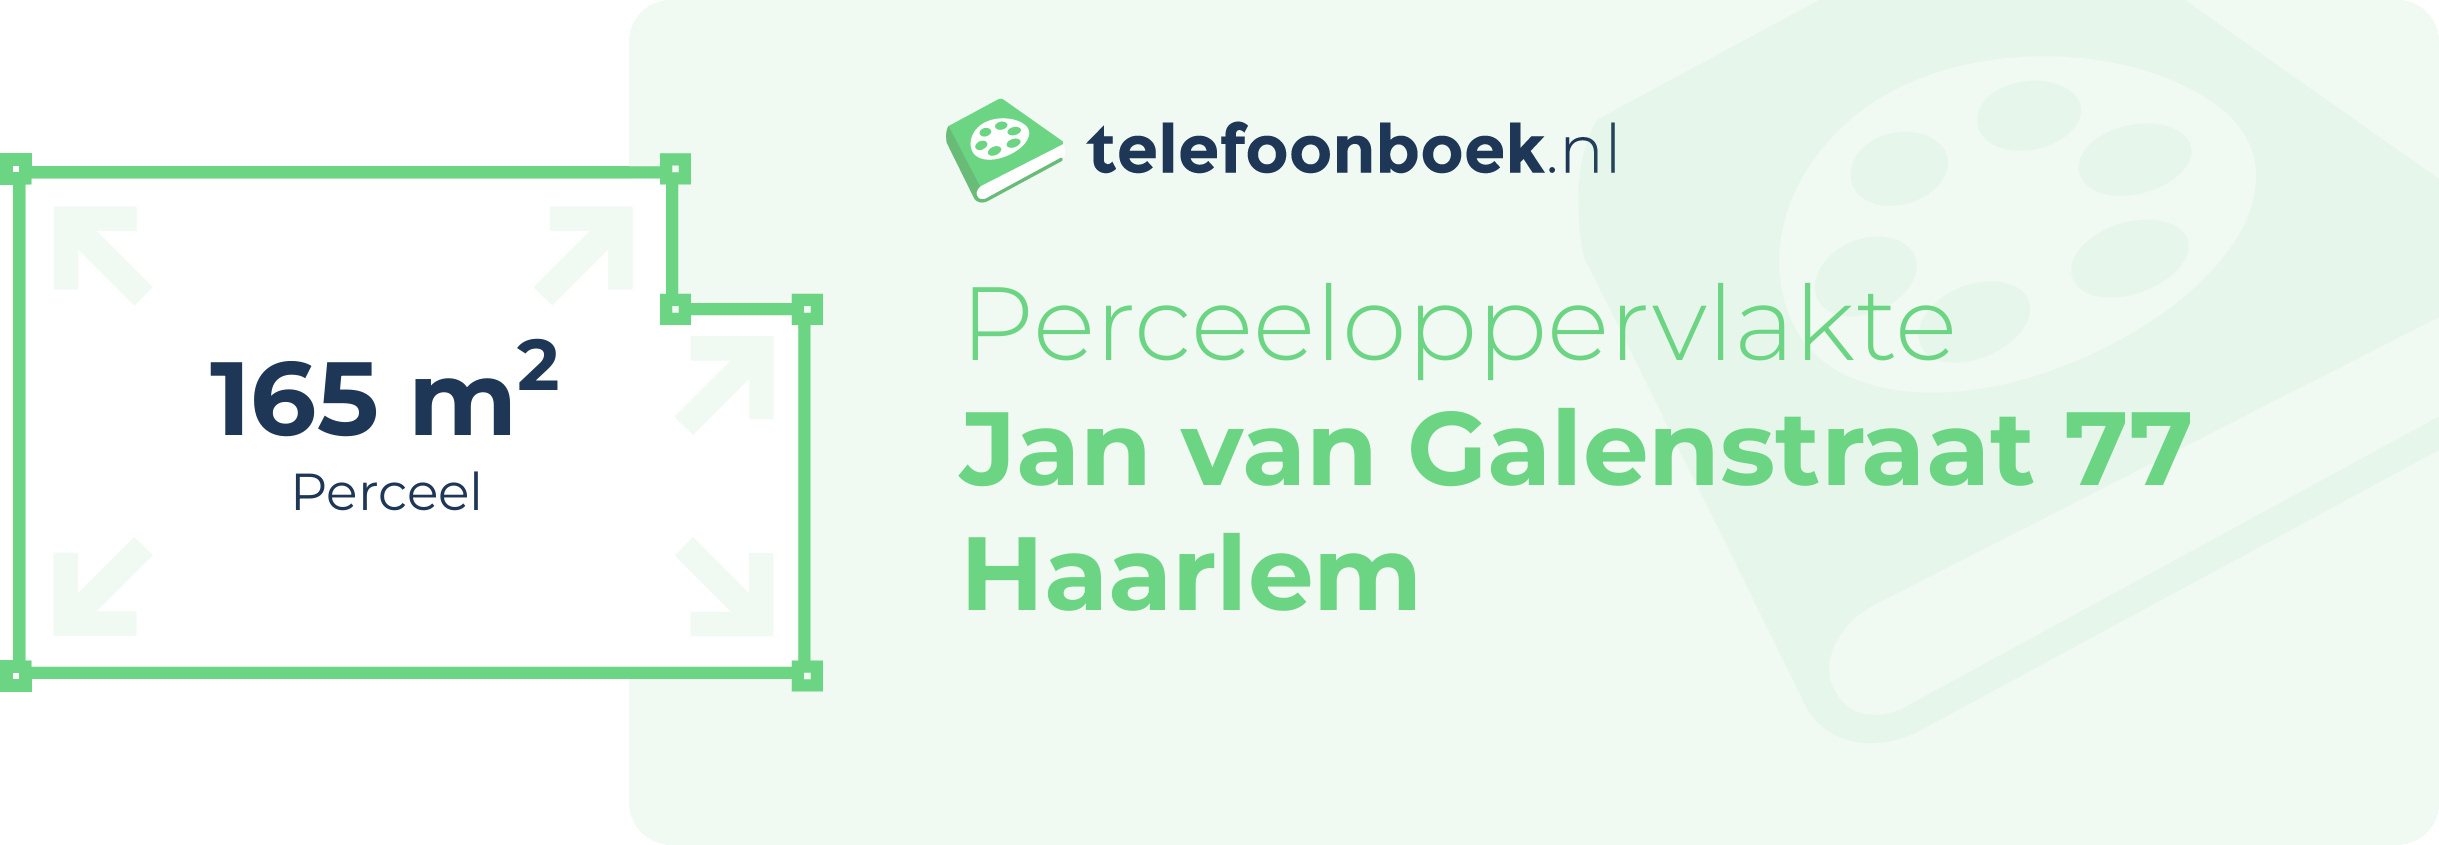 Perceeloppervlakte Jan Van Galenstraat 77 Haarlem